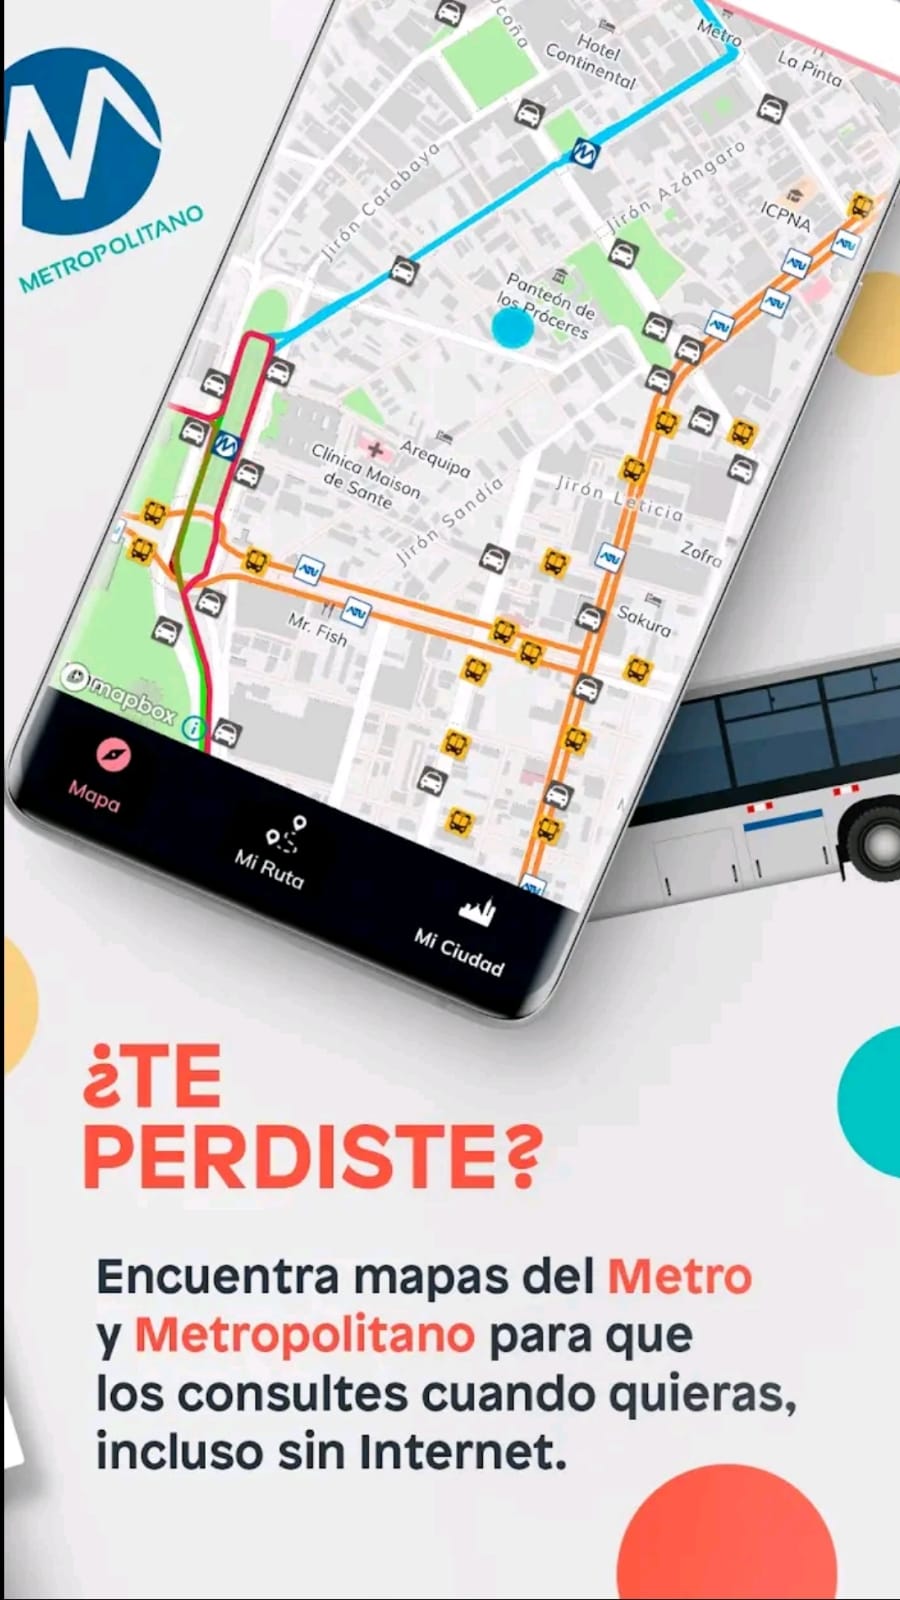 Rumbo: Aplicación de transporte público lanza nueva actualización